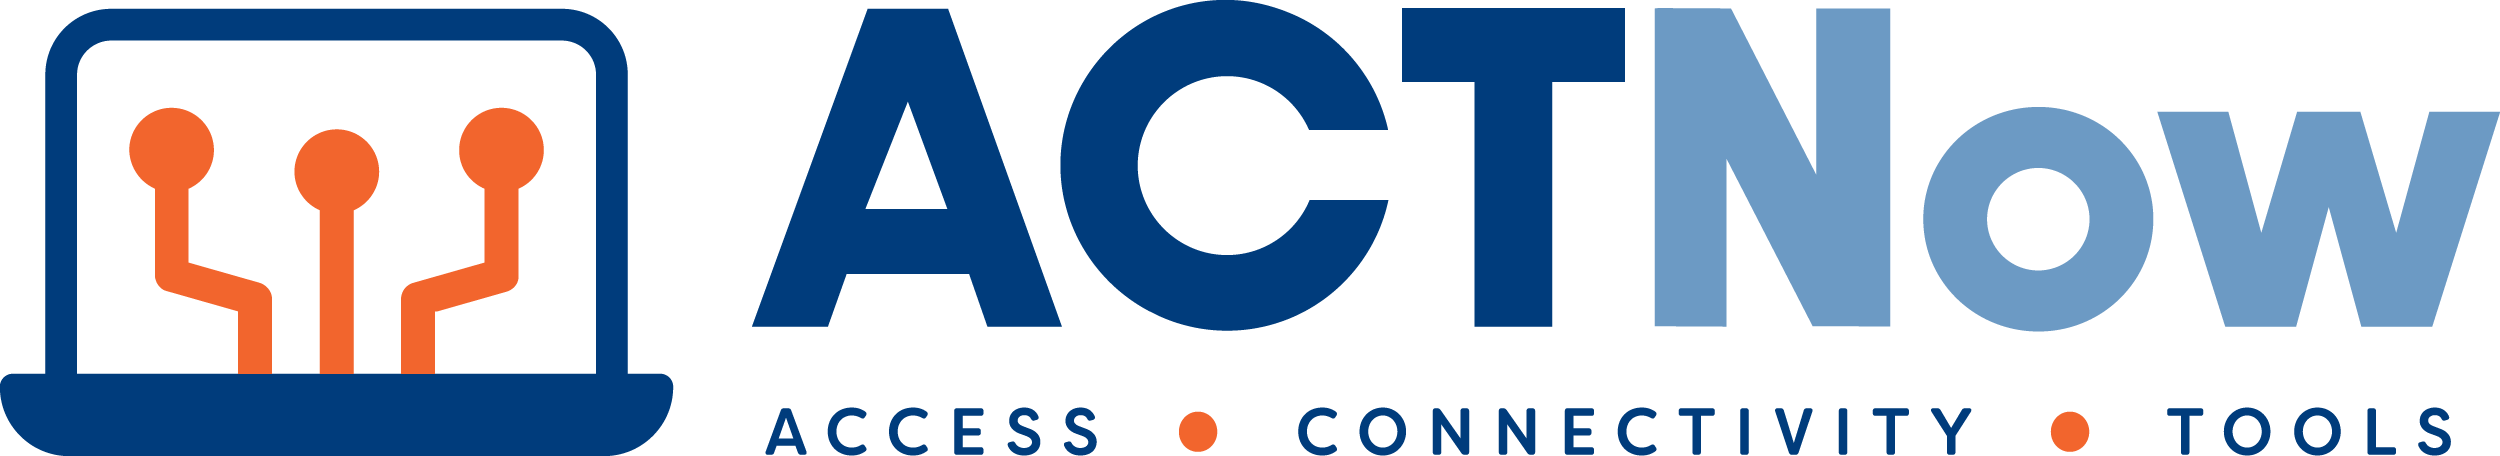 ACTnow logo